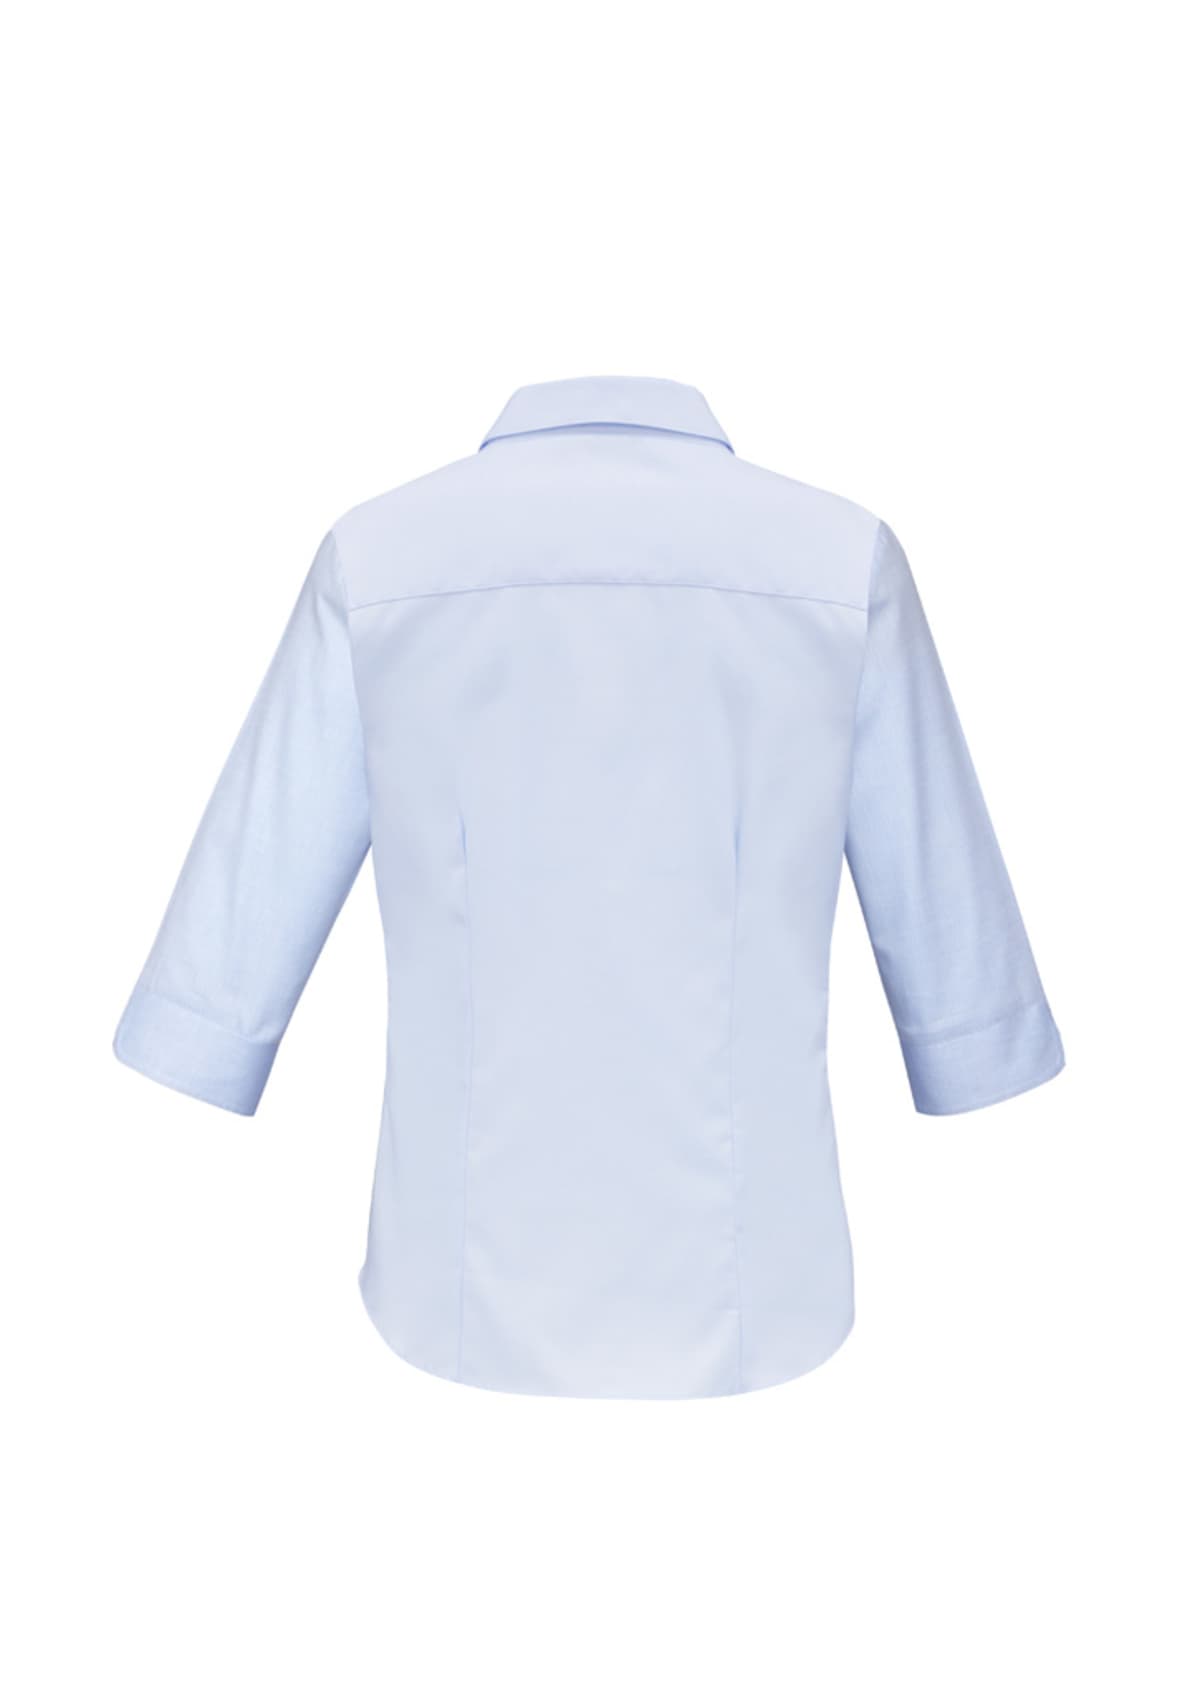 Womens Luxe 3/4 Sleeve Shirt